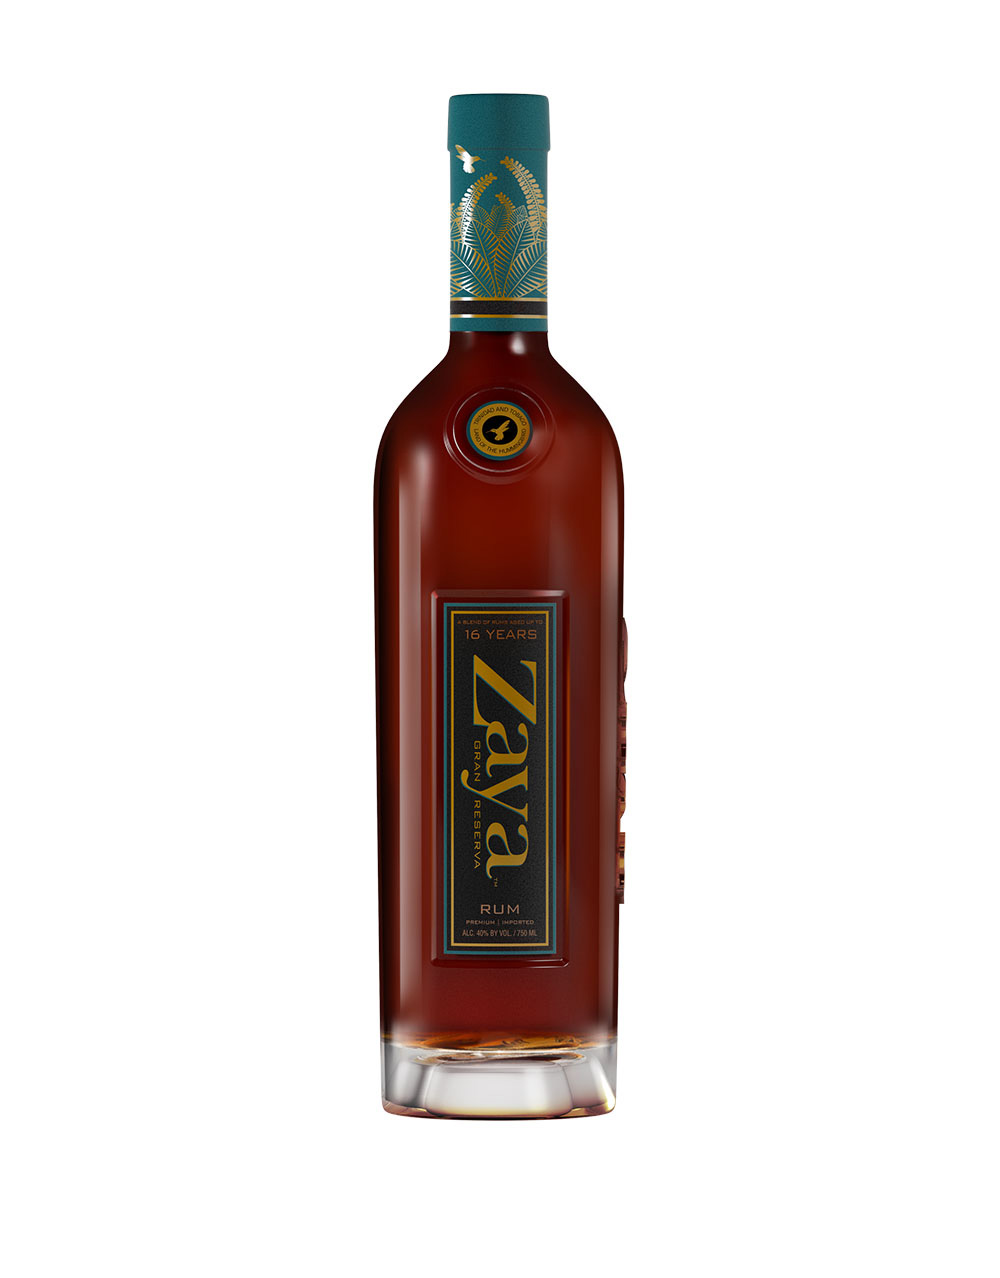 Zaya Gran Reserva 16 Year Old Rum